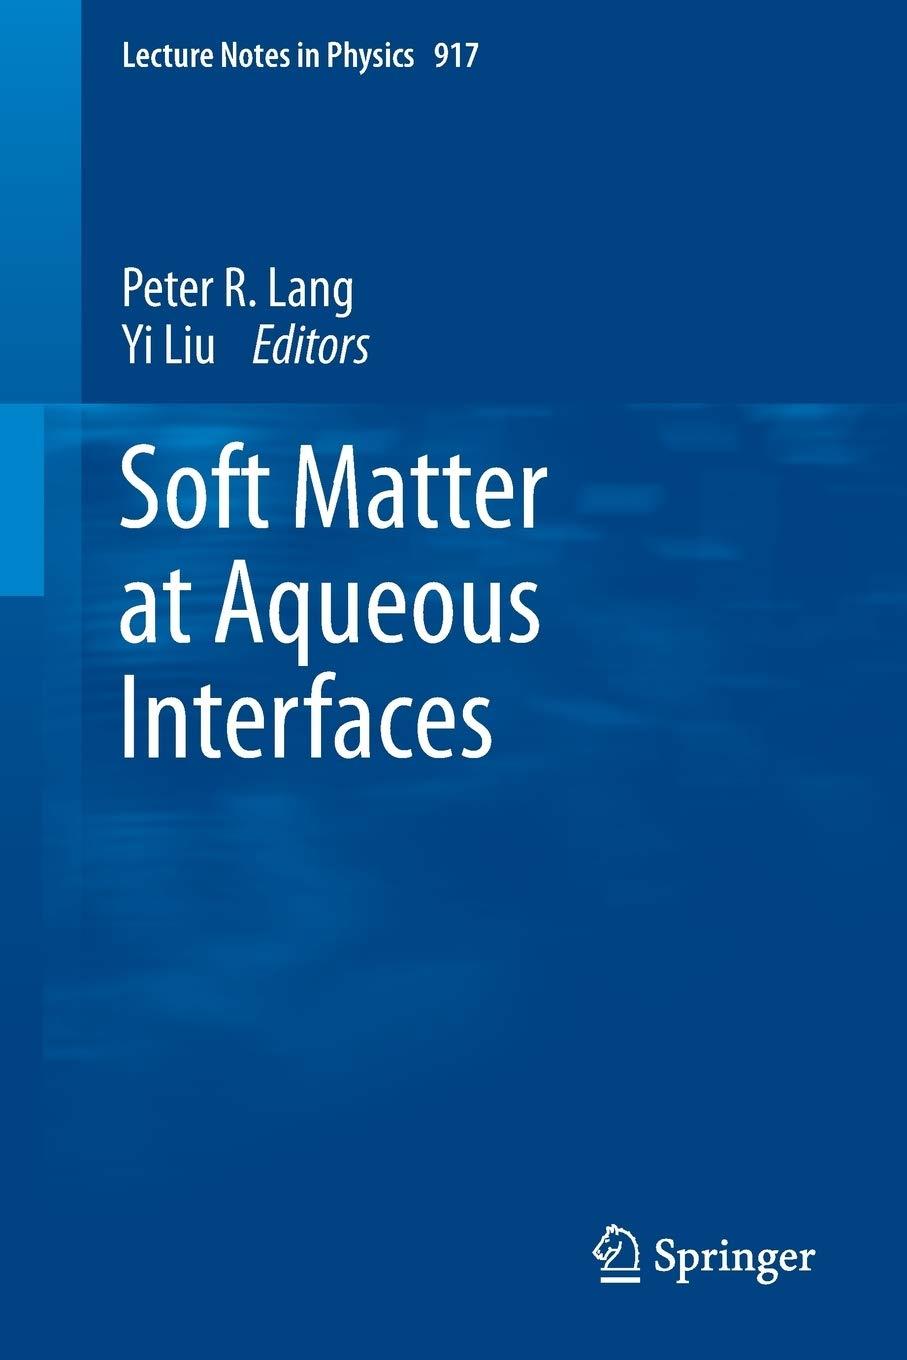 soft matter at aqueous interfaces 1st edition peter lang, yi liu 3319245007, 978-3319245003